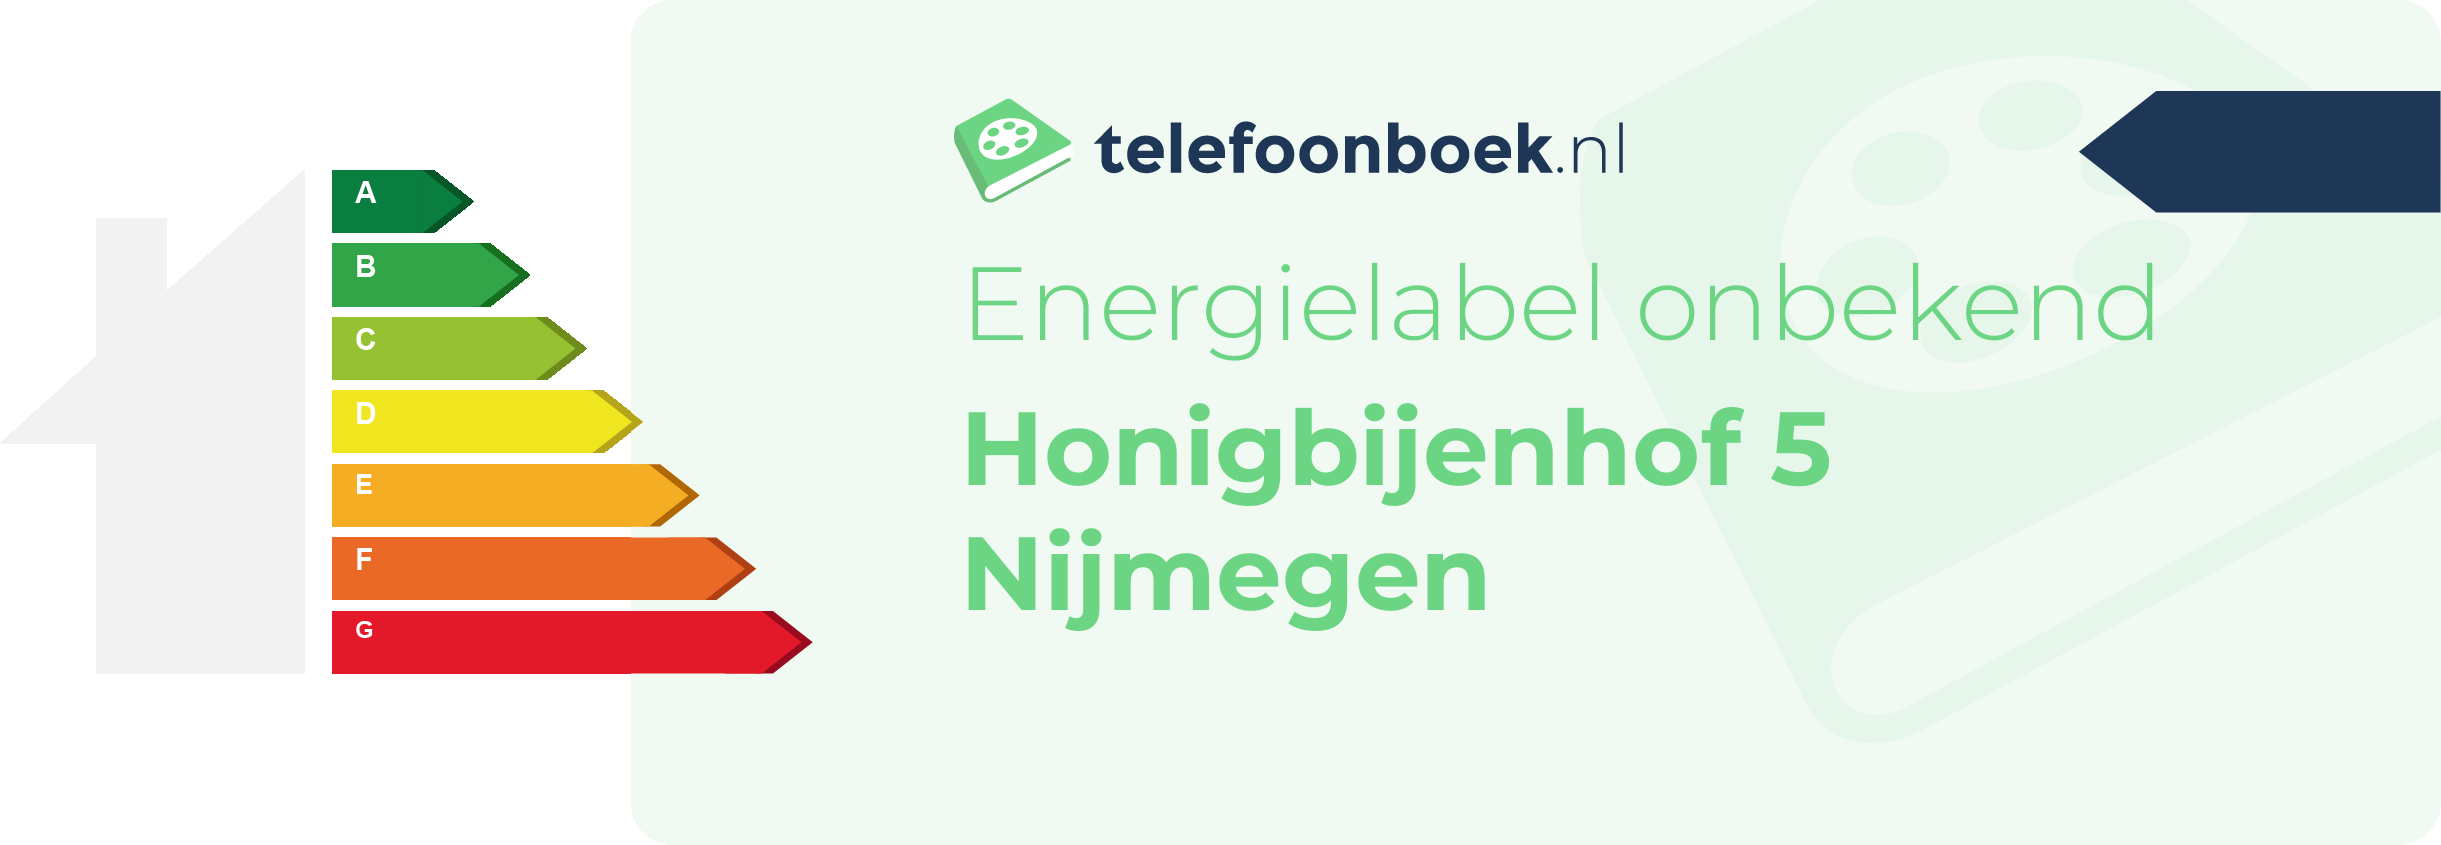 Energielabel Honigbijenhof 5 Nijmegen